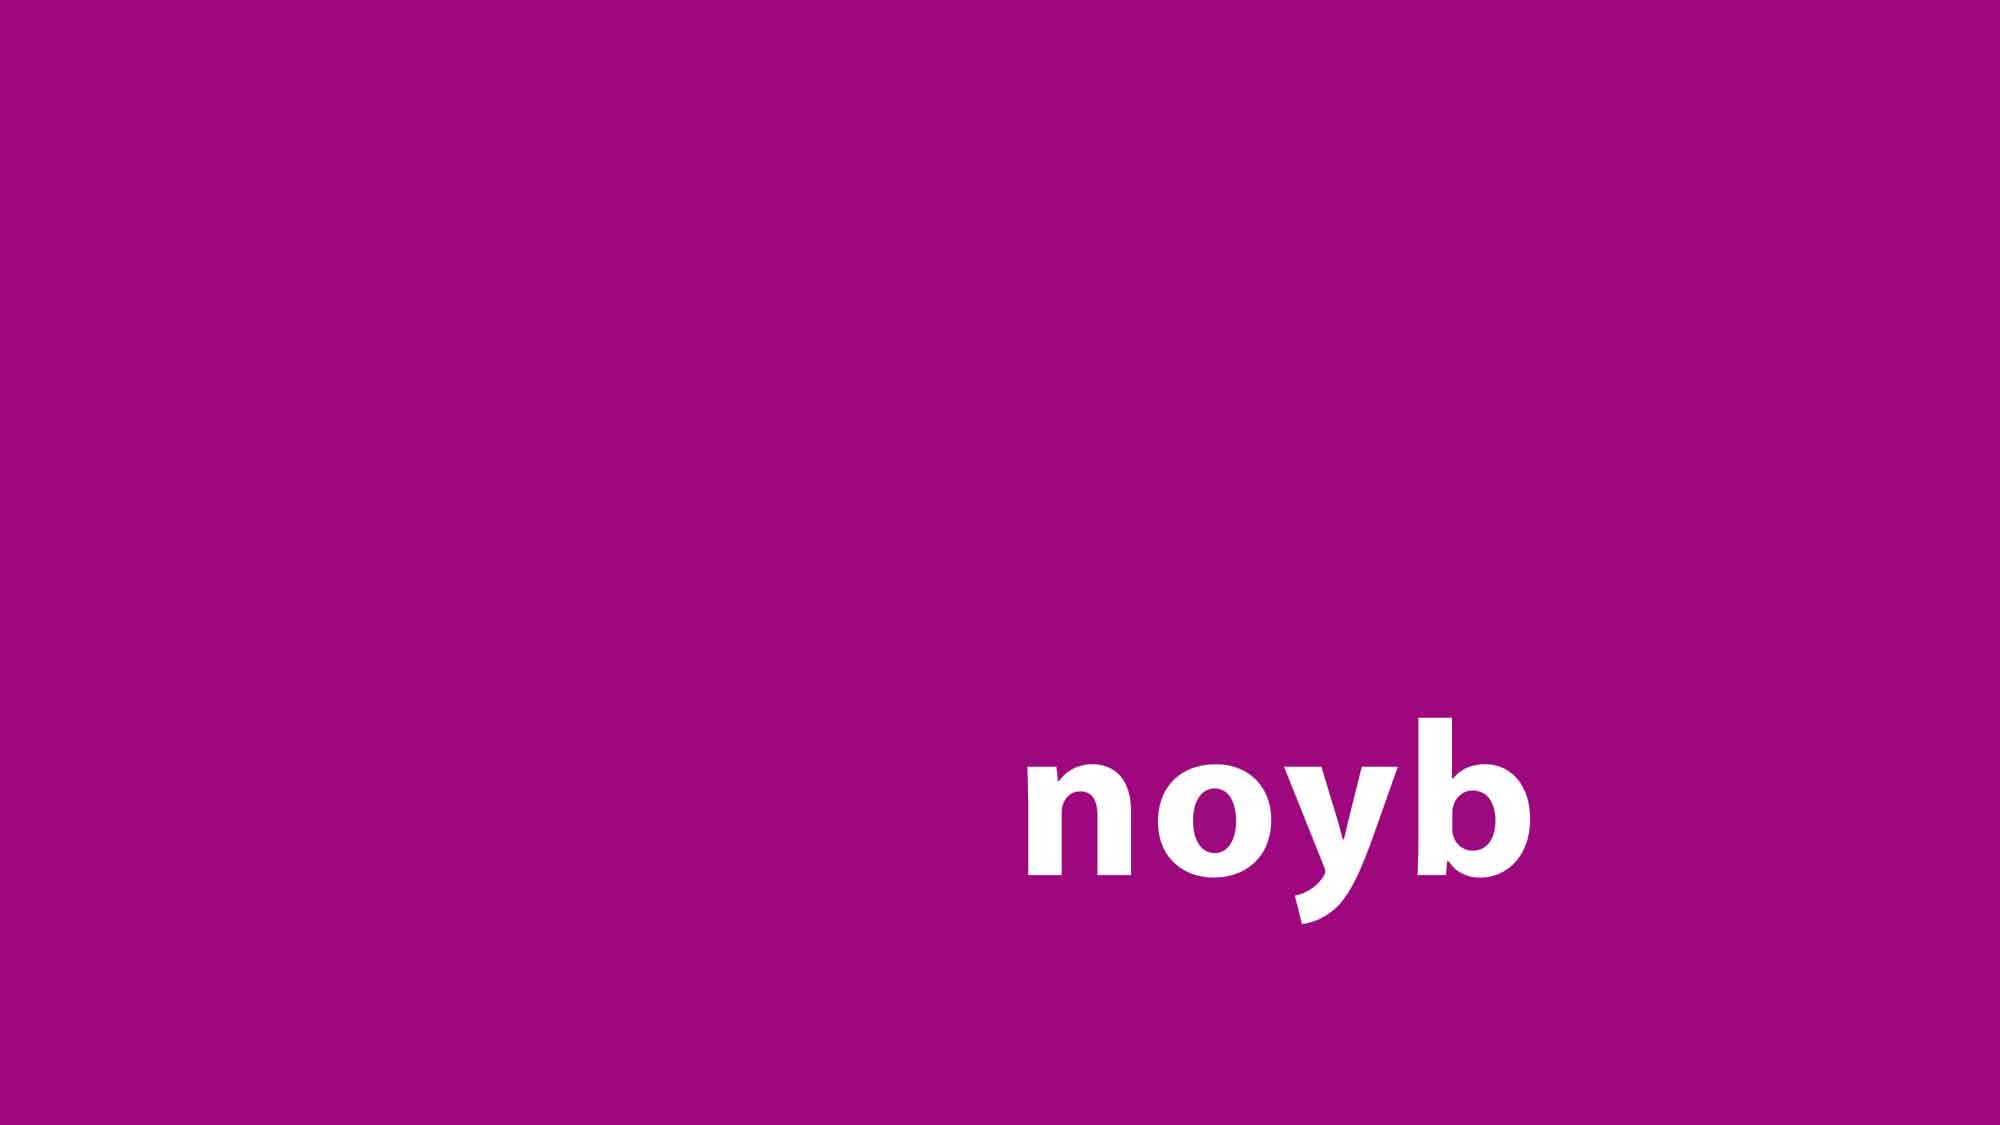 Adresshändler verklagt deutsche Behörde, damit Noyb keine Akteneinsicht bekommt